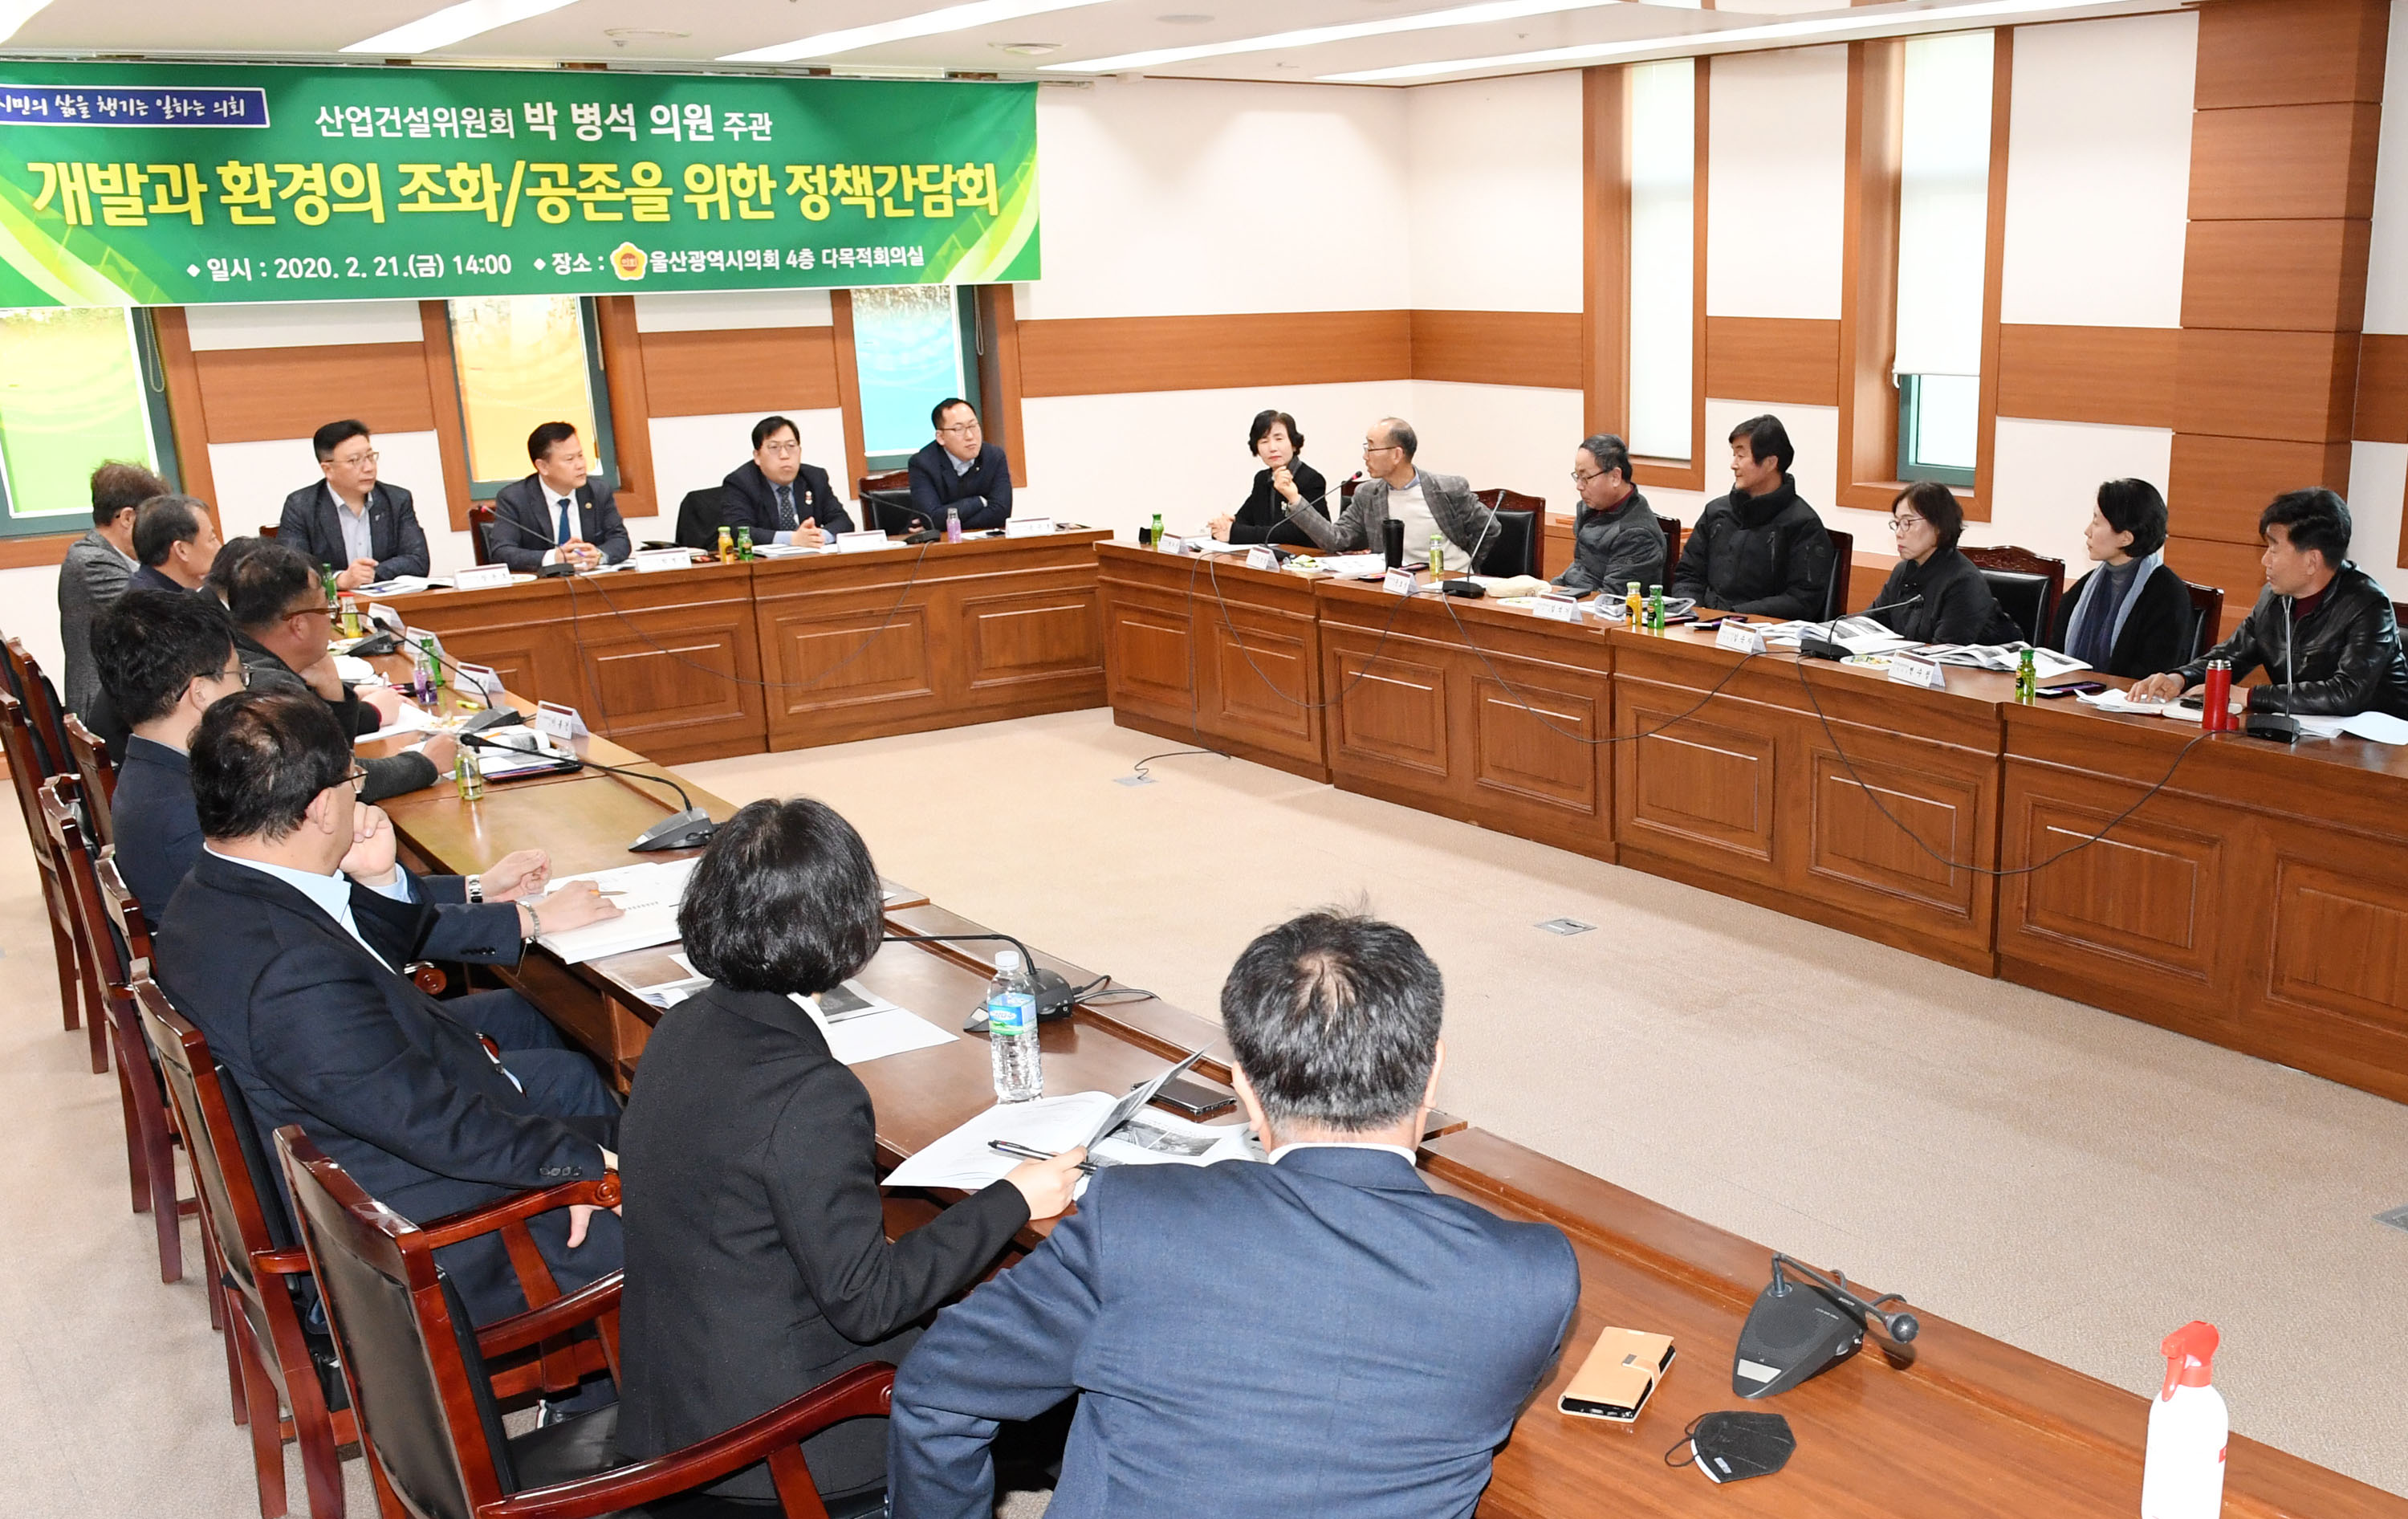 박병석 의원 개발과 환경의 조화/공존을 위한 정책간담회 개최1